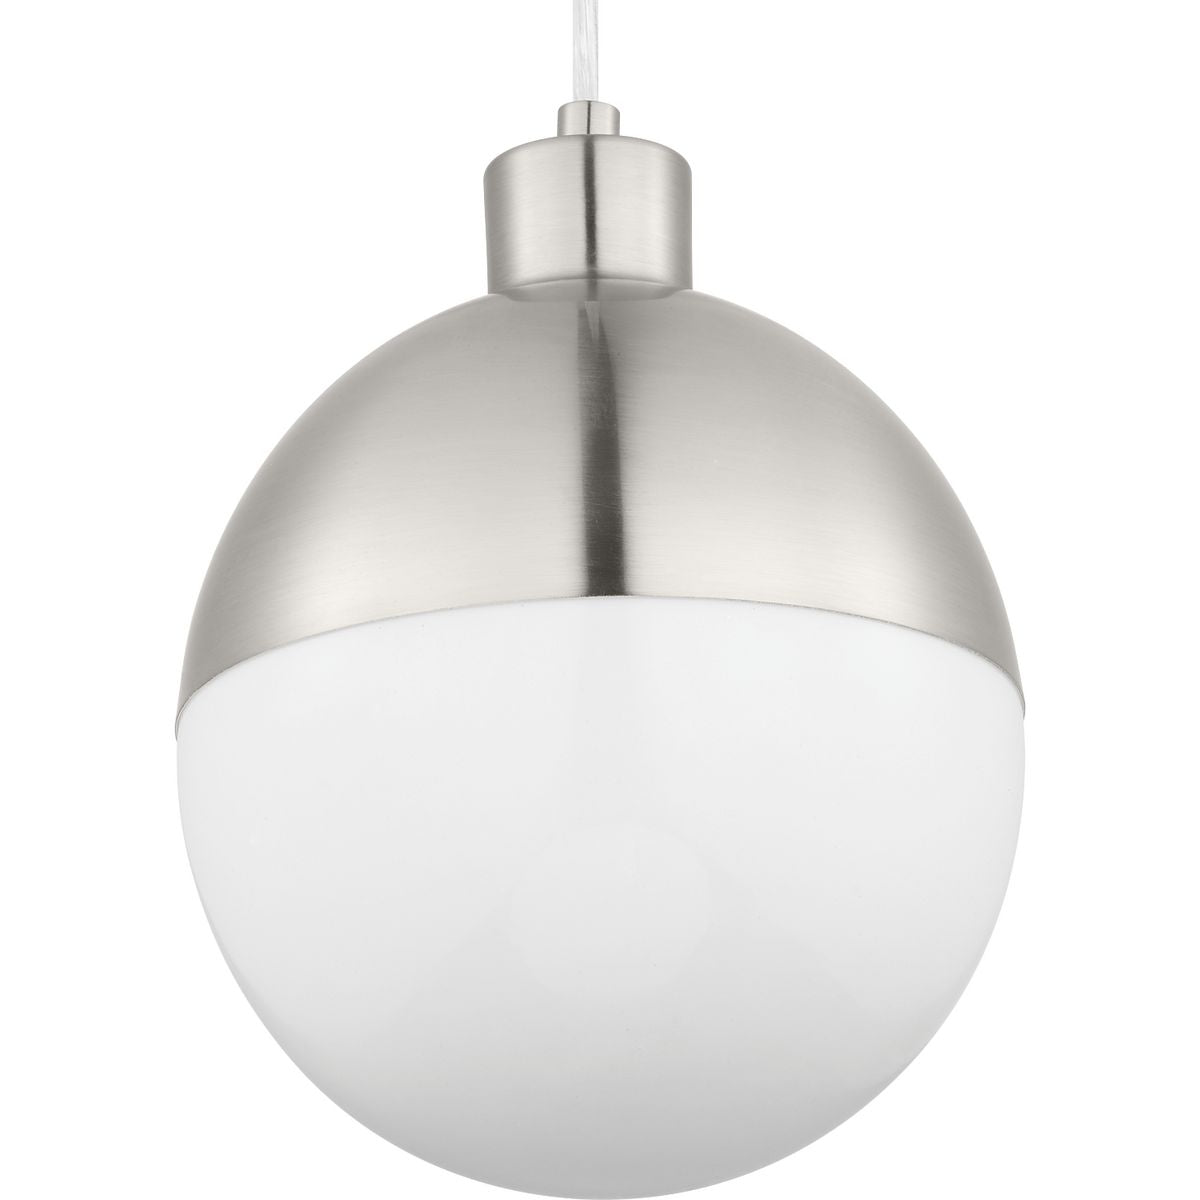 Progress Canada - LED Pendant - Globe LED - Brushed Nickel- Union Lighting Luminaires Decor